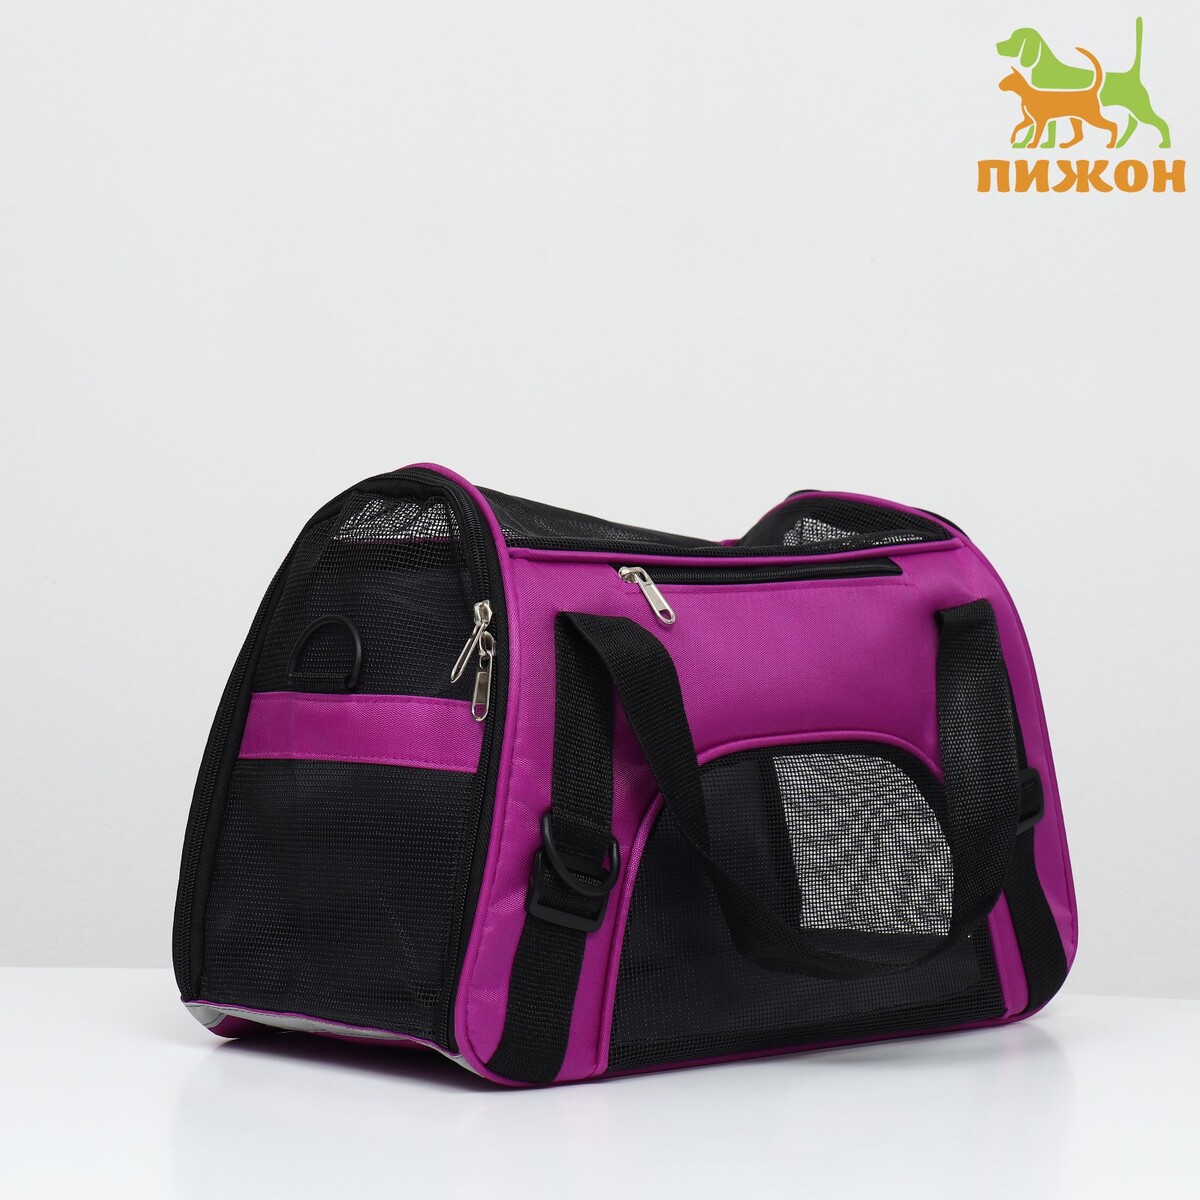 Сумка-переноска сетчатая, 48 х 26 х 31 см, фиолетовая сумка переноска для животных оксфорд 42 х 22 х 29 см фиолетовая